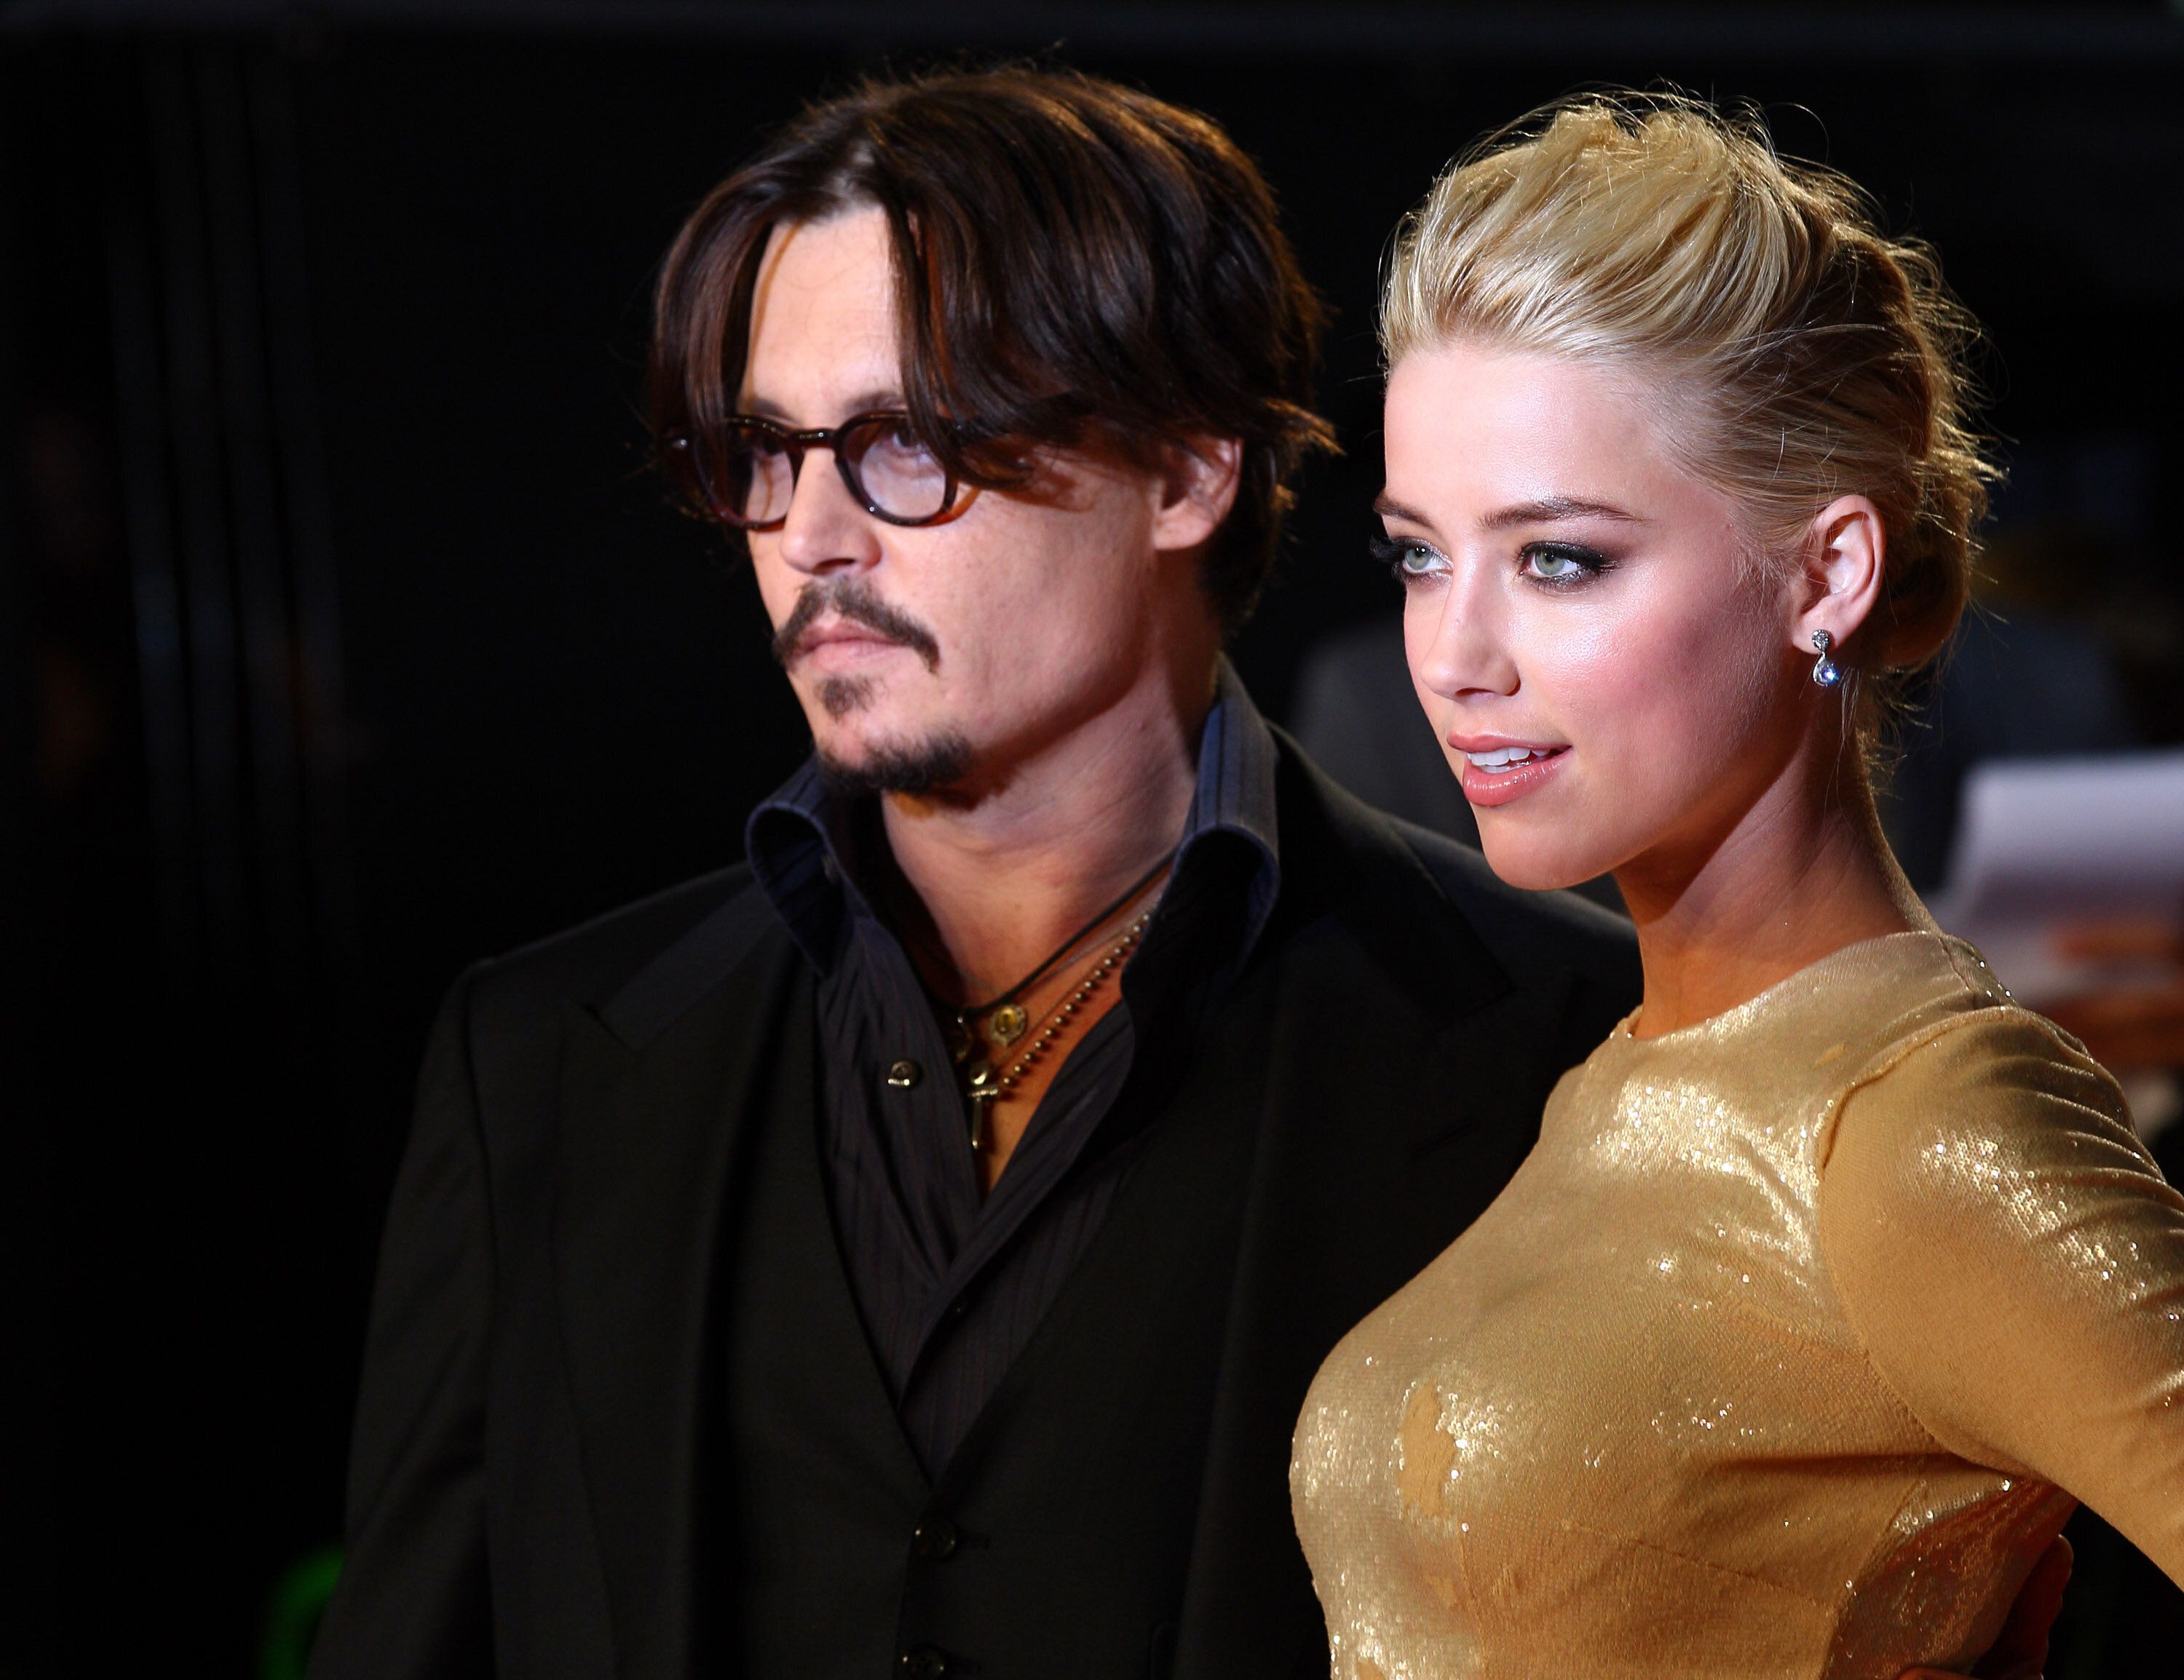 Johnny Depp et Amber Heard, ici en 2011, encore discrets sur leur